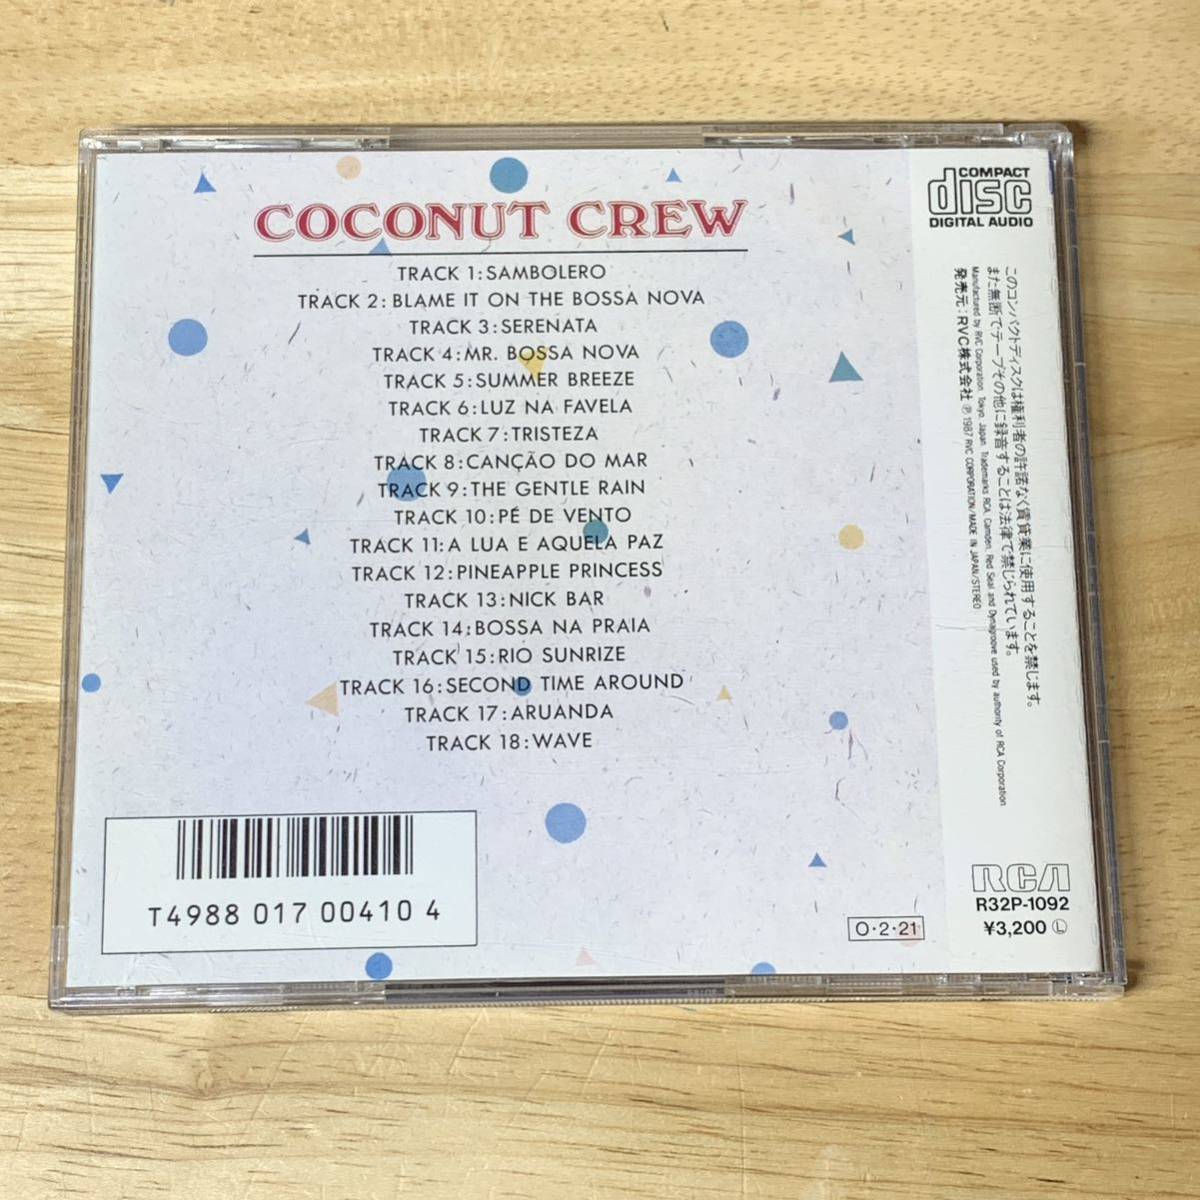 Coconut Crew / 渚のリズム - ココナツ・クルー・ベスト 1987 CD|和モノ|和ジャズ|ラテン|ボサノヴァ|エリオセルソ|坂井紅介|吉田和雄|80s_画像2